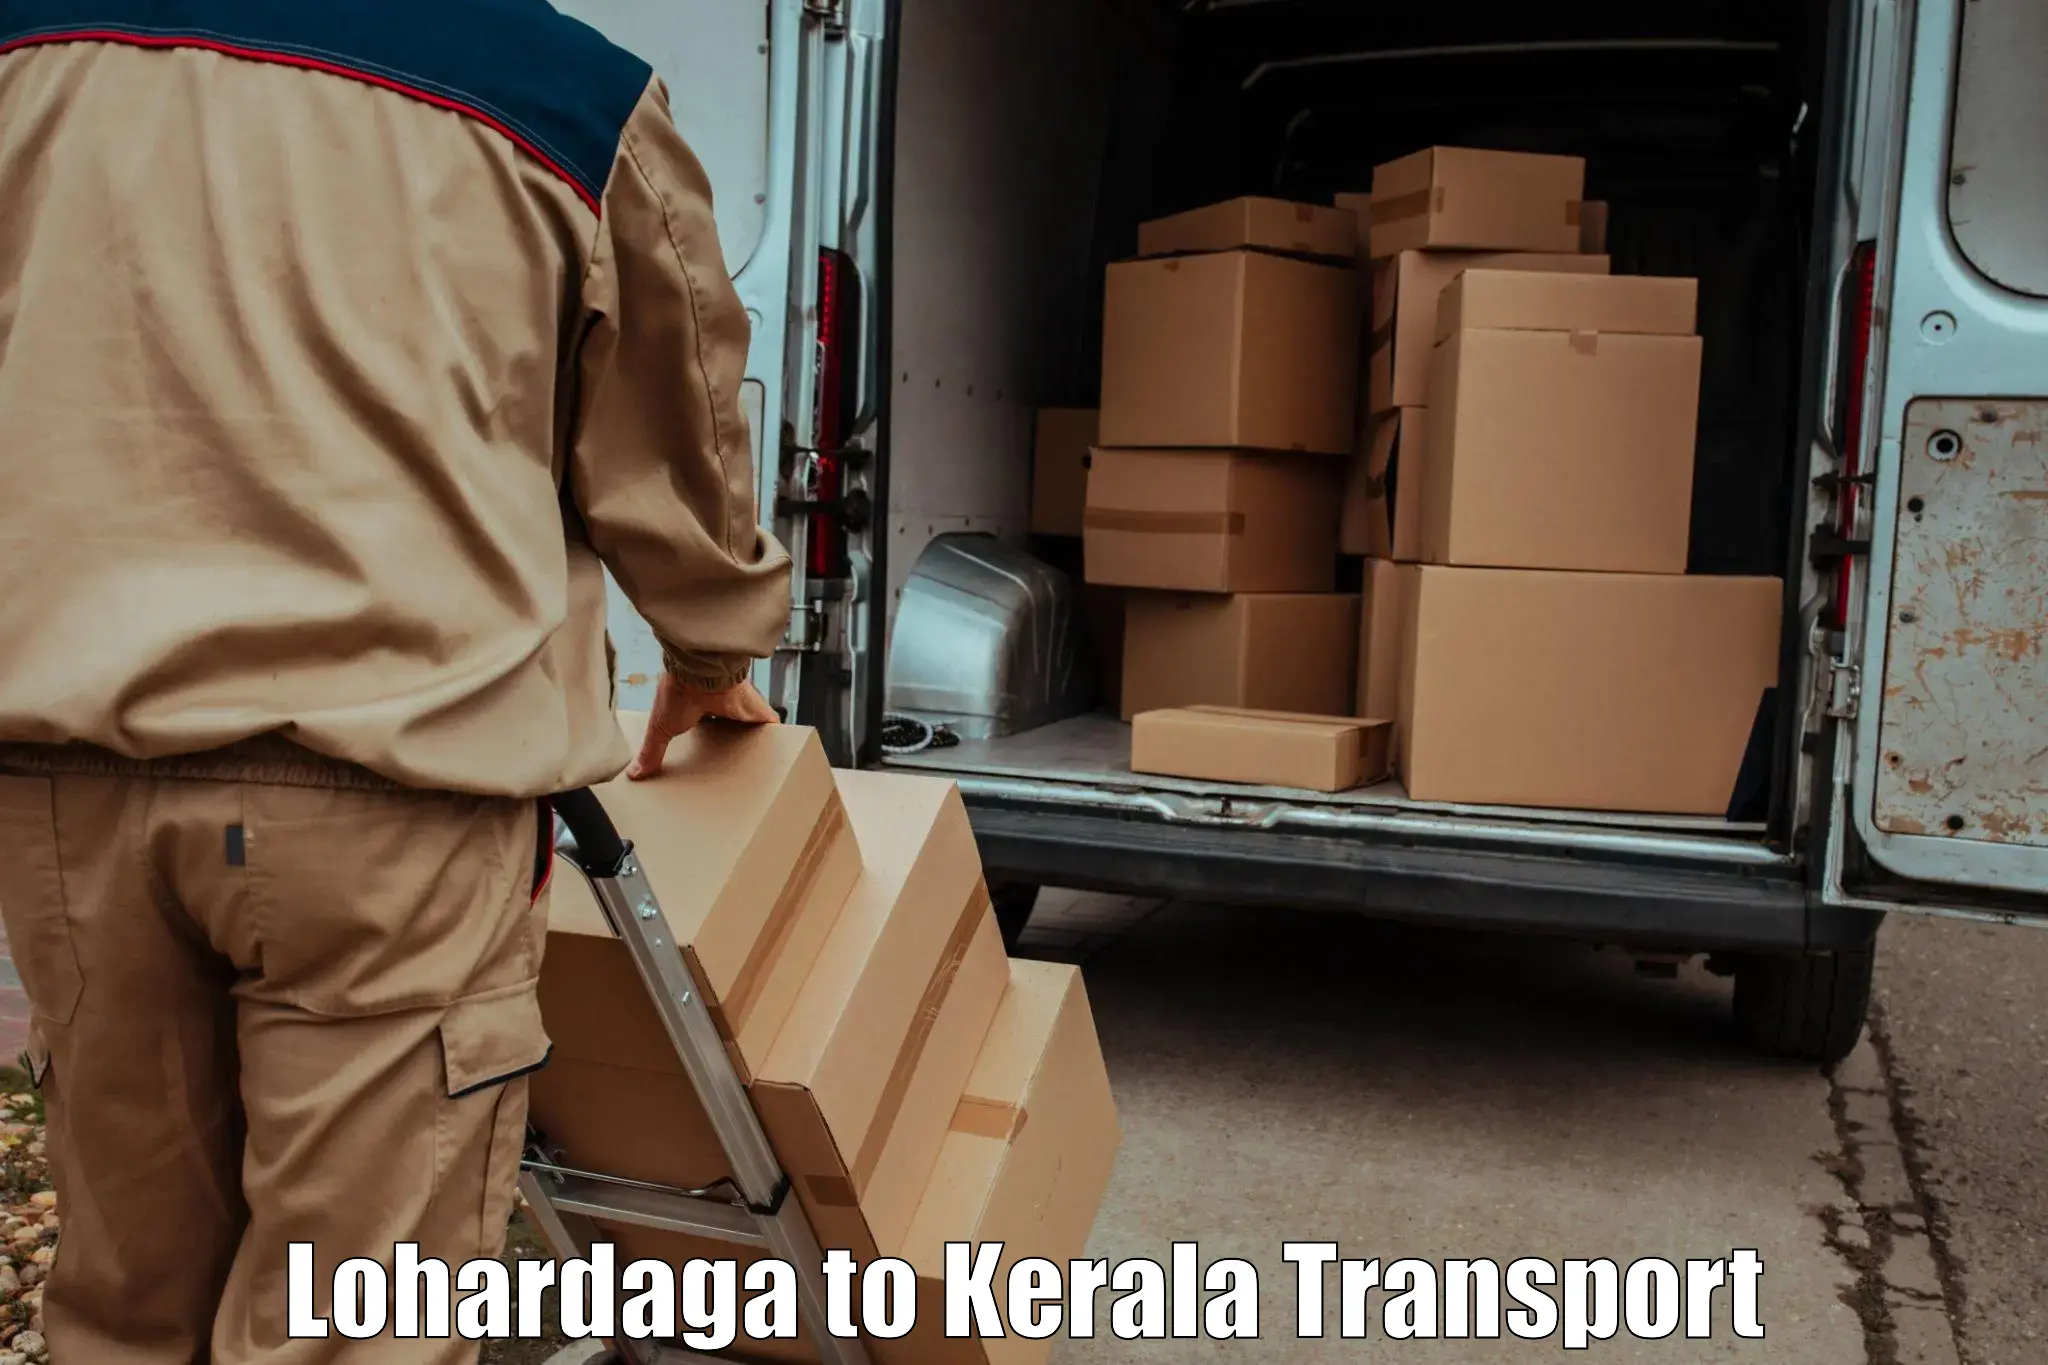 Delivery service Lohardaga to Mundakayam